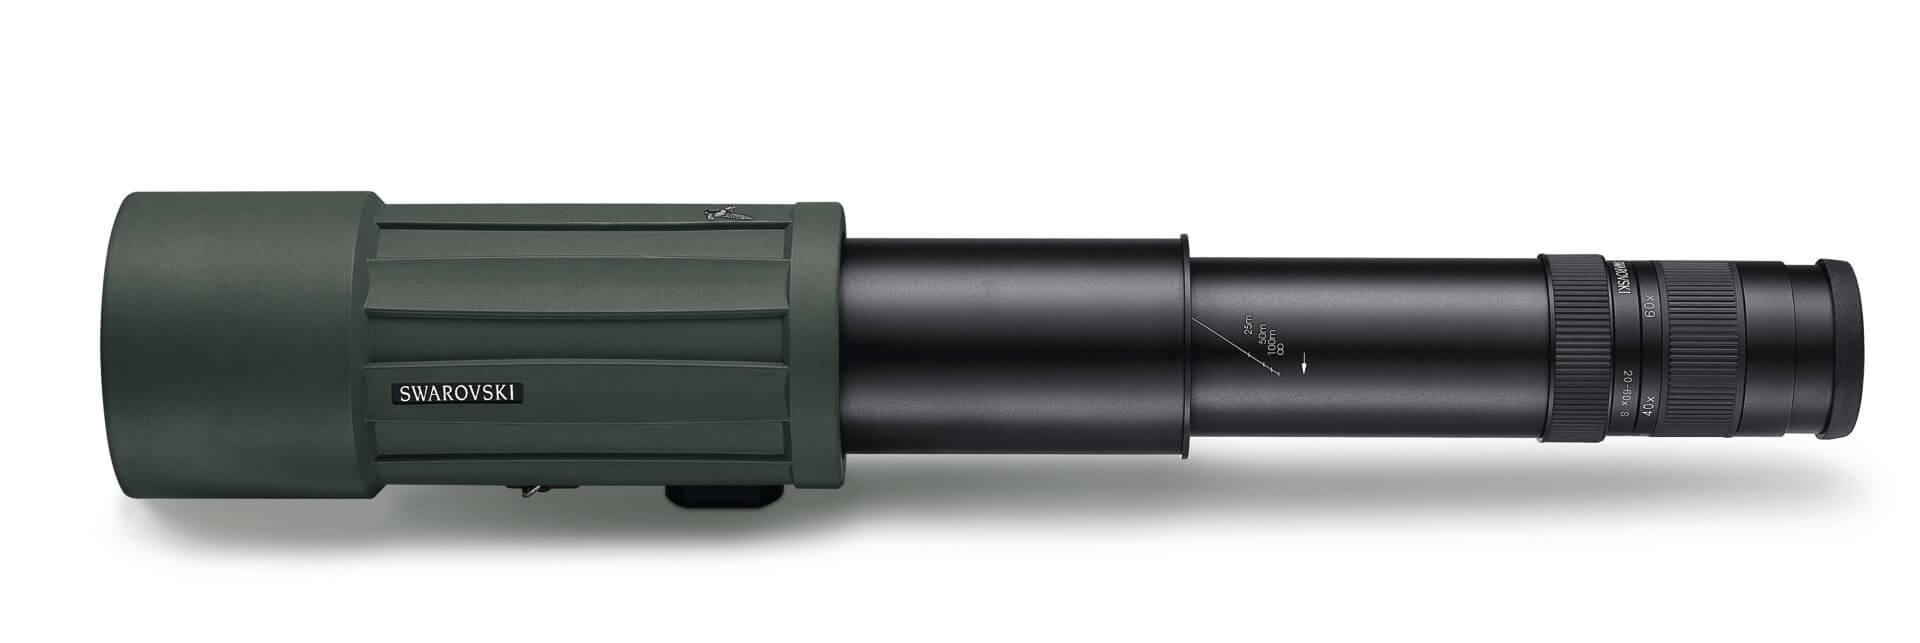 Swarovski Okular 25-50x W für CTS 85